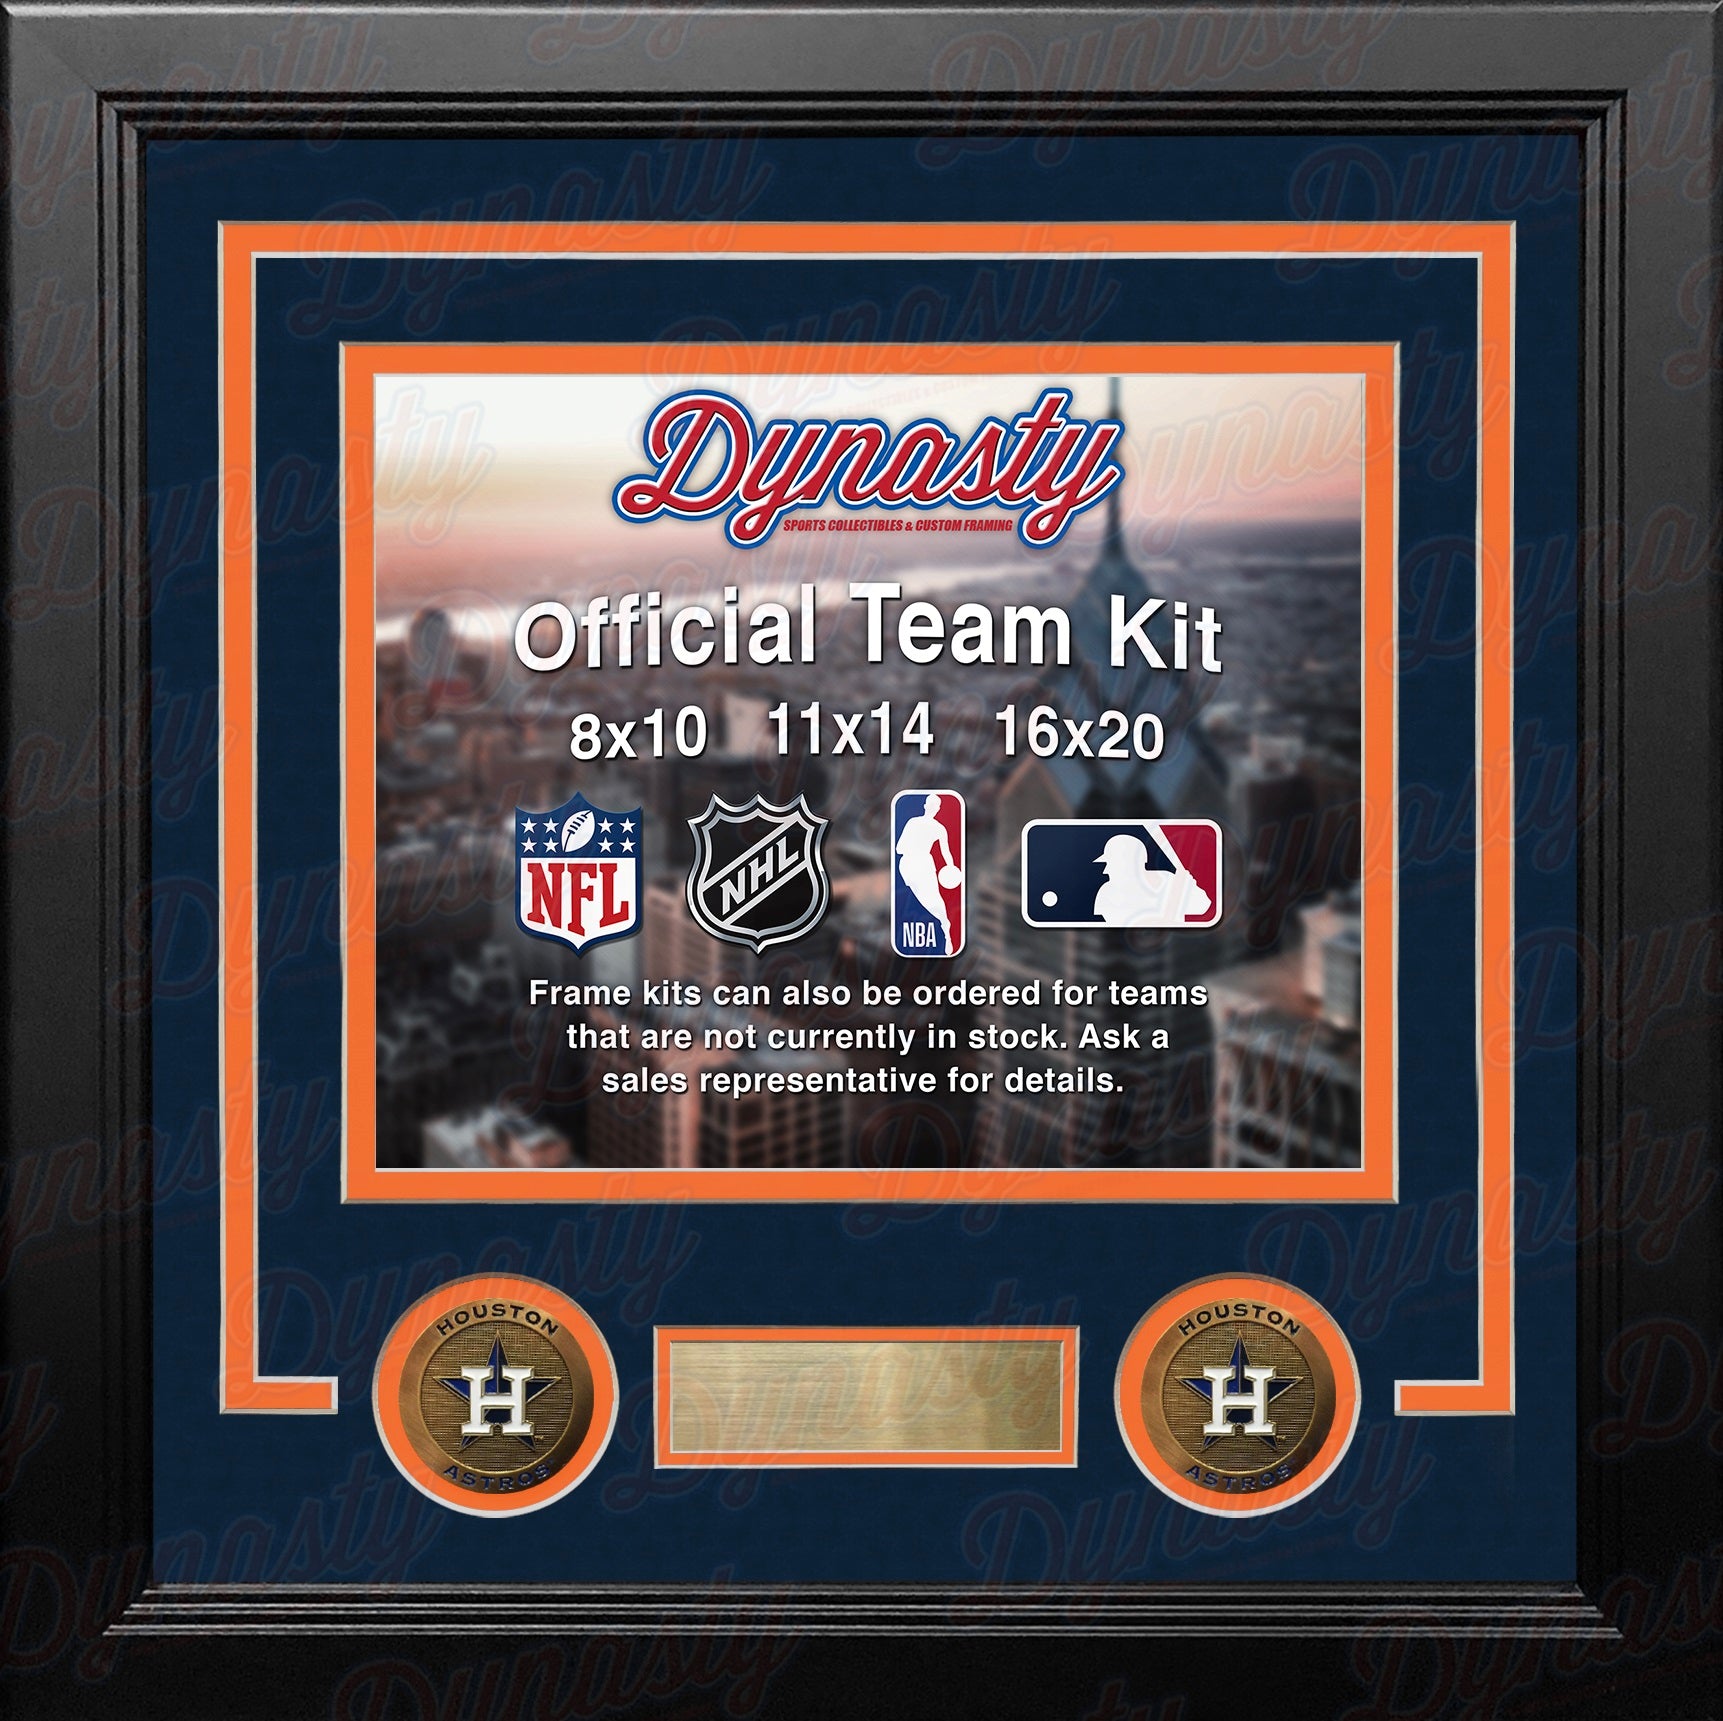 Houston Astros Custom MLB Baseball 11x14 Picture Frame Kit (Multiple Colors) - Dynasty Sports & Framing 